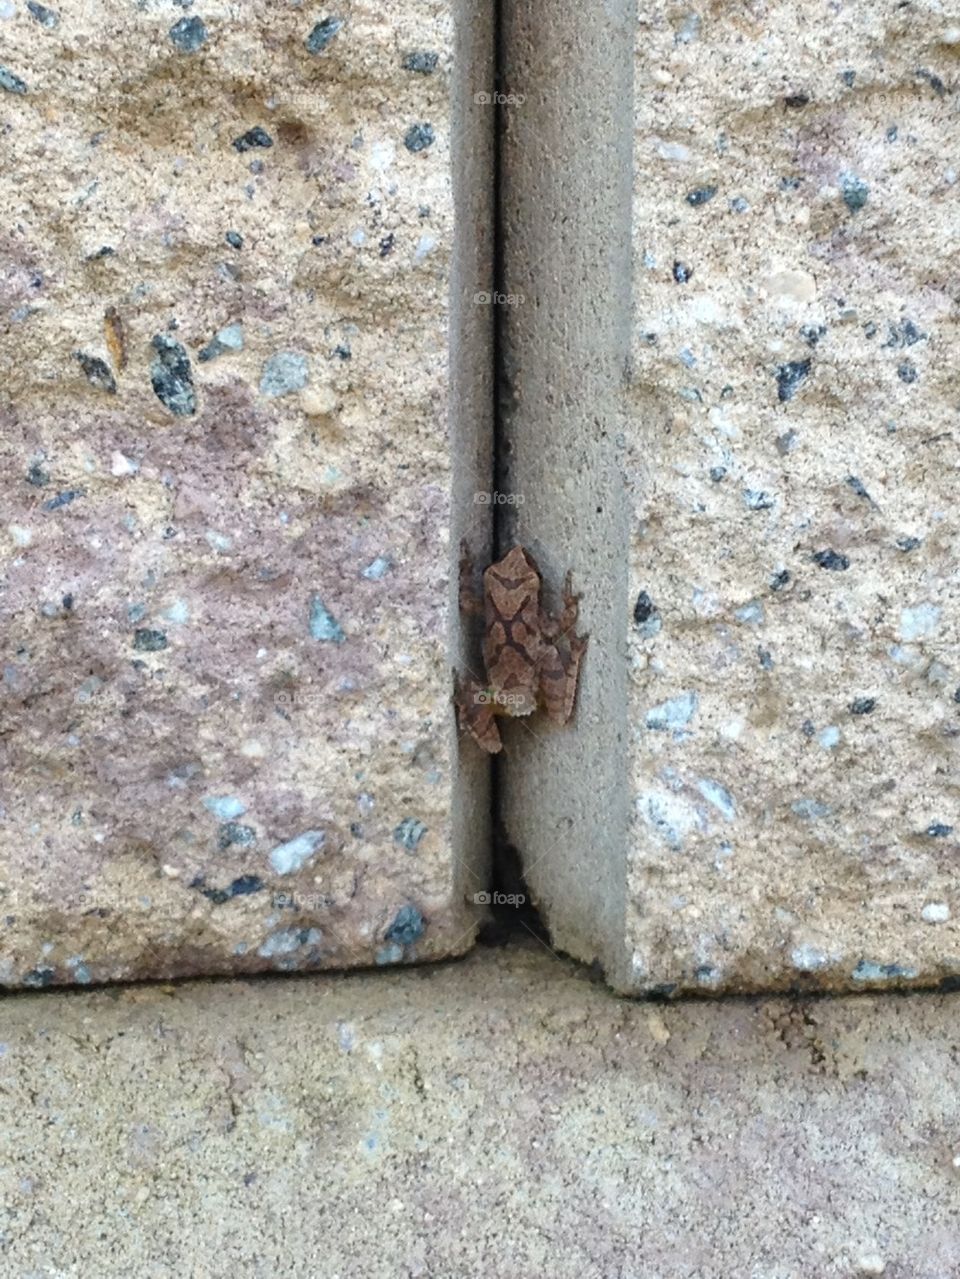 Frog on Rocks